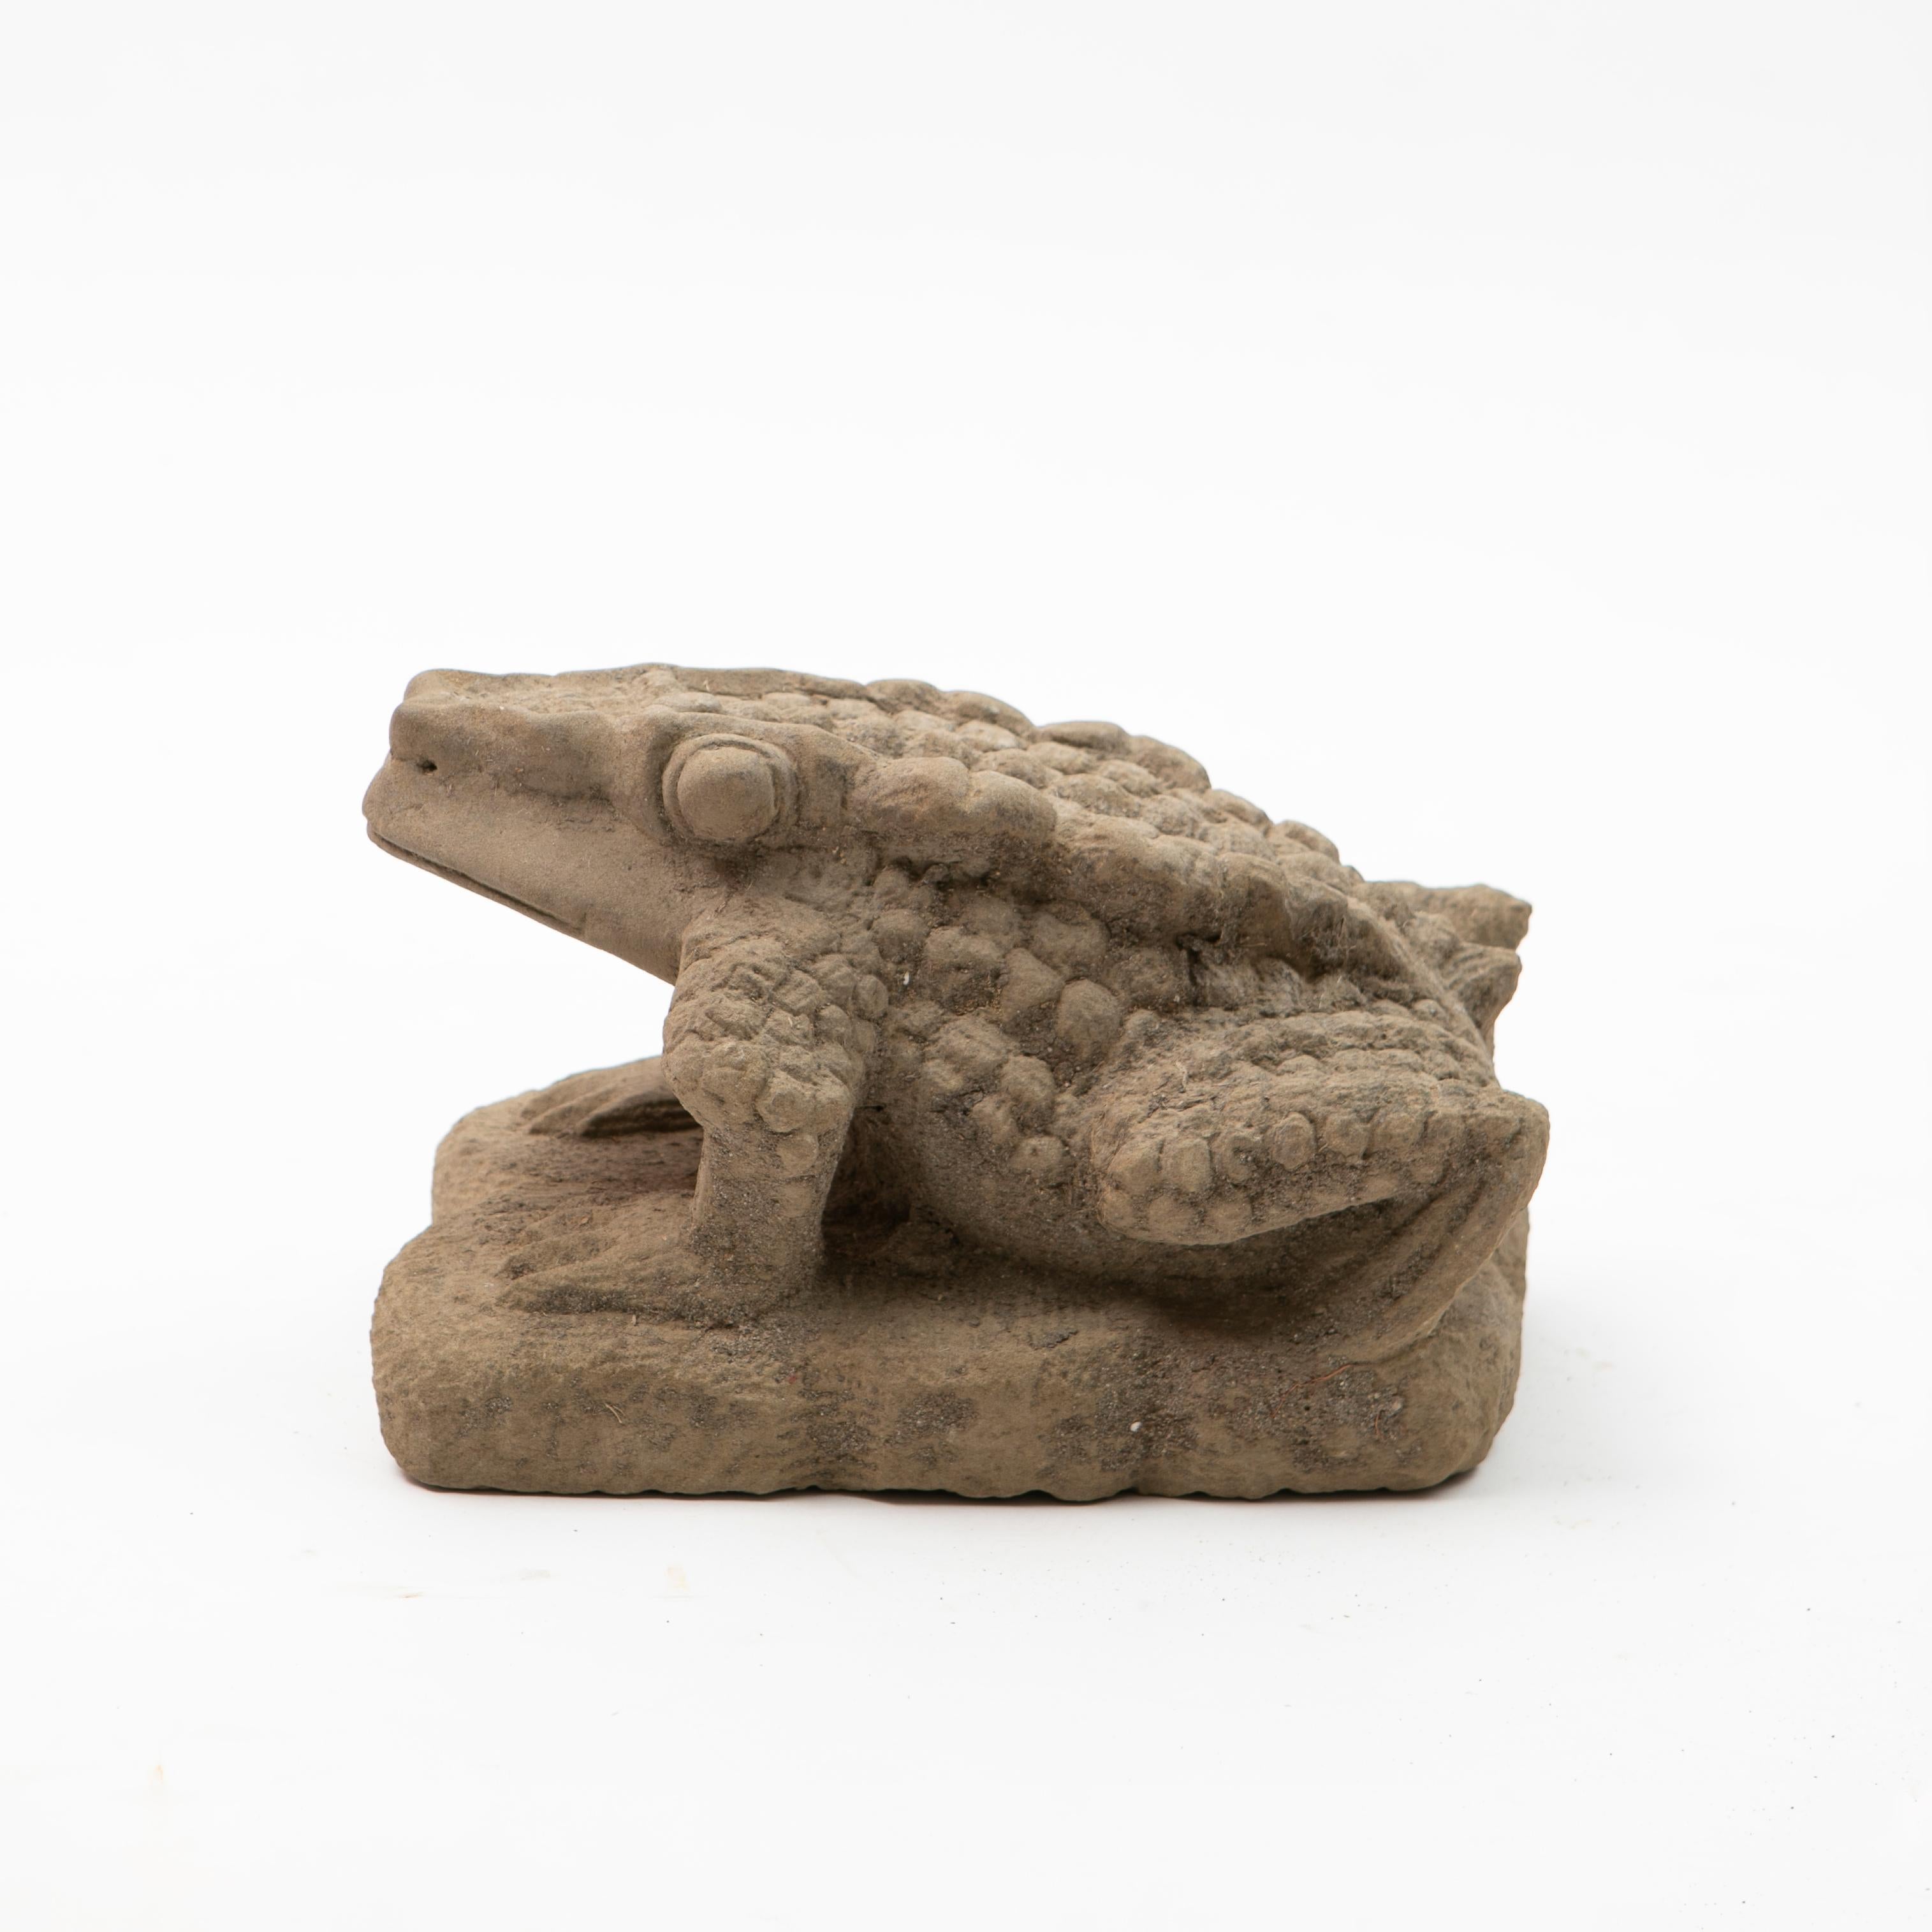 Sculpture en grès sculpté de Birmanie, vieille de 300-400 ans, représentant une grenouille.
De la pagode / du temple en Birmanie, 17-18ème siècle.

Provenant de la succession d'un collectionneur danois. 

Intacte et dans son état d'origine avec